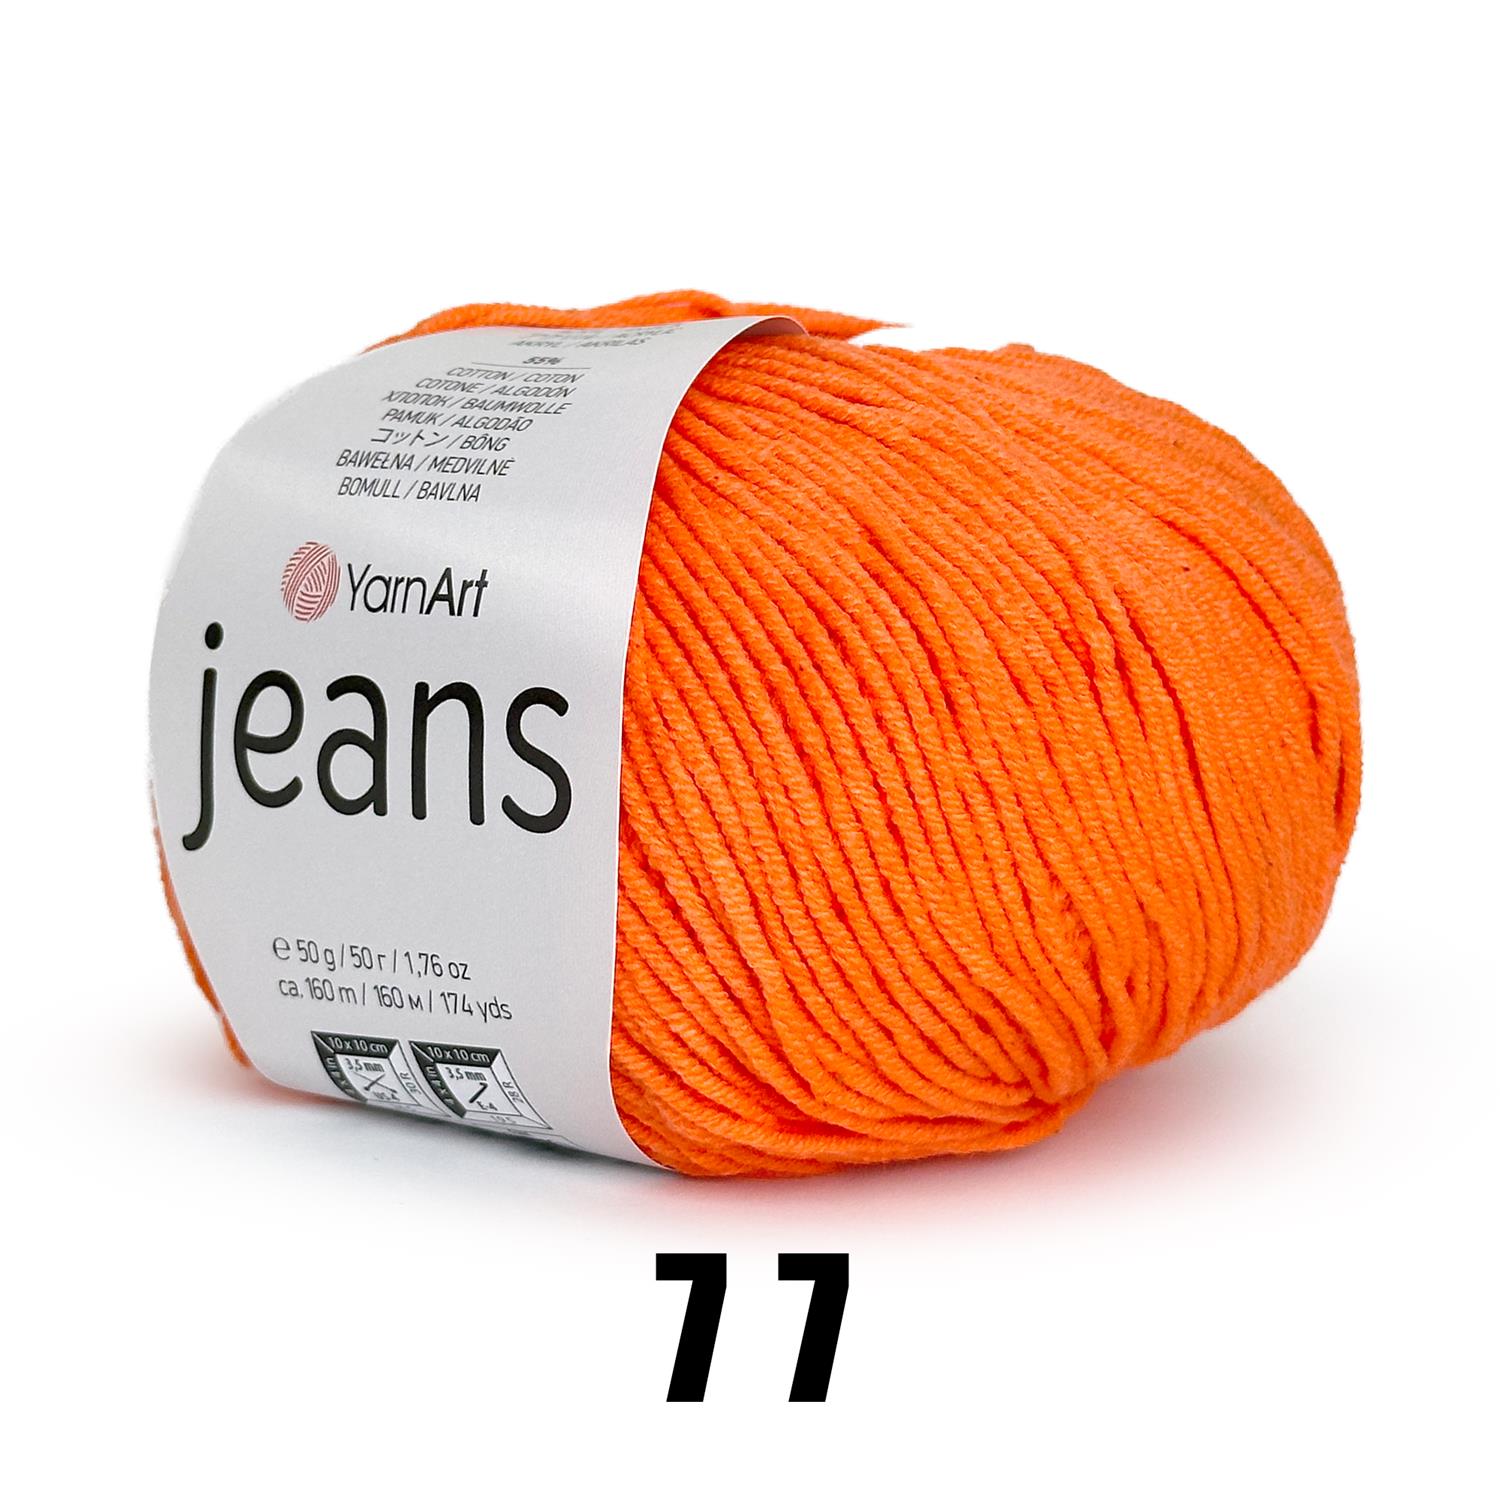 YarnArt Jeans (50g/160M) 77 tiefes orange